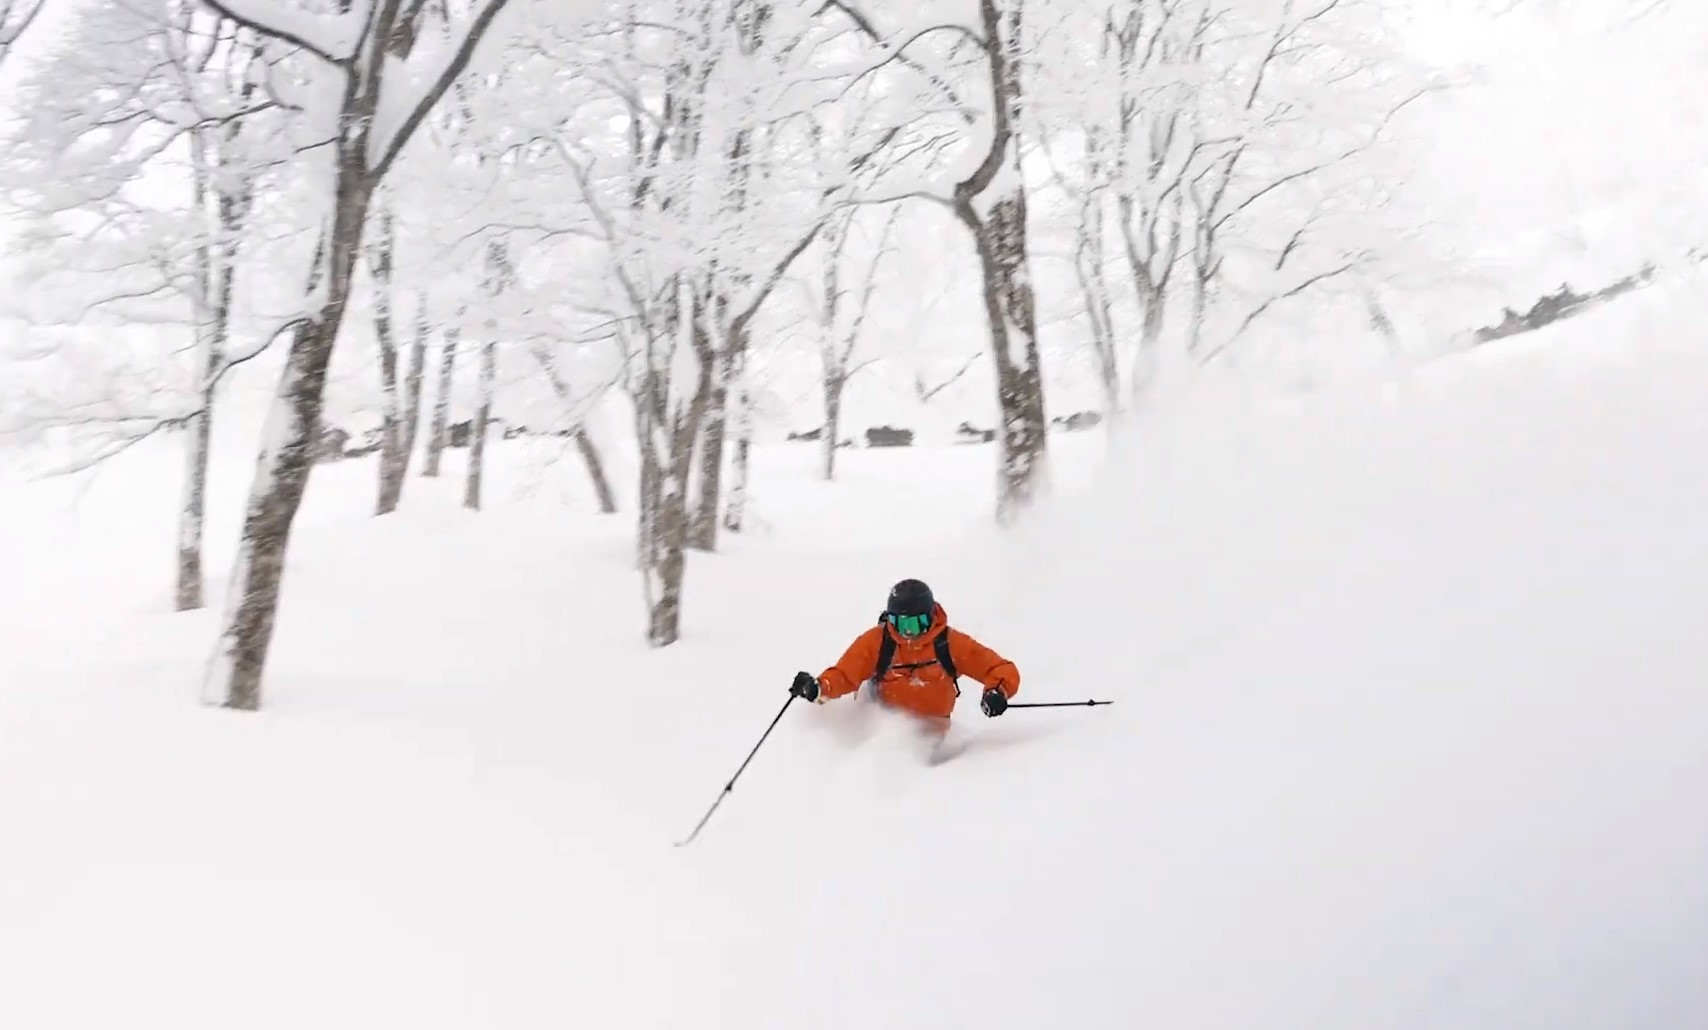 "Mori", la auténtica esencia del esquí 'powder' entre árboles en Japón